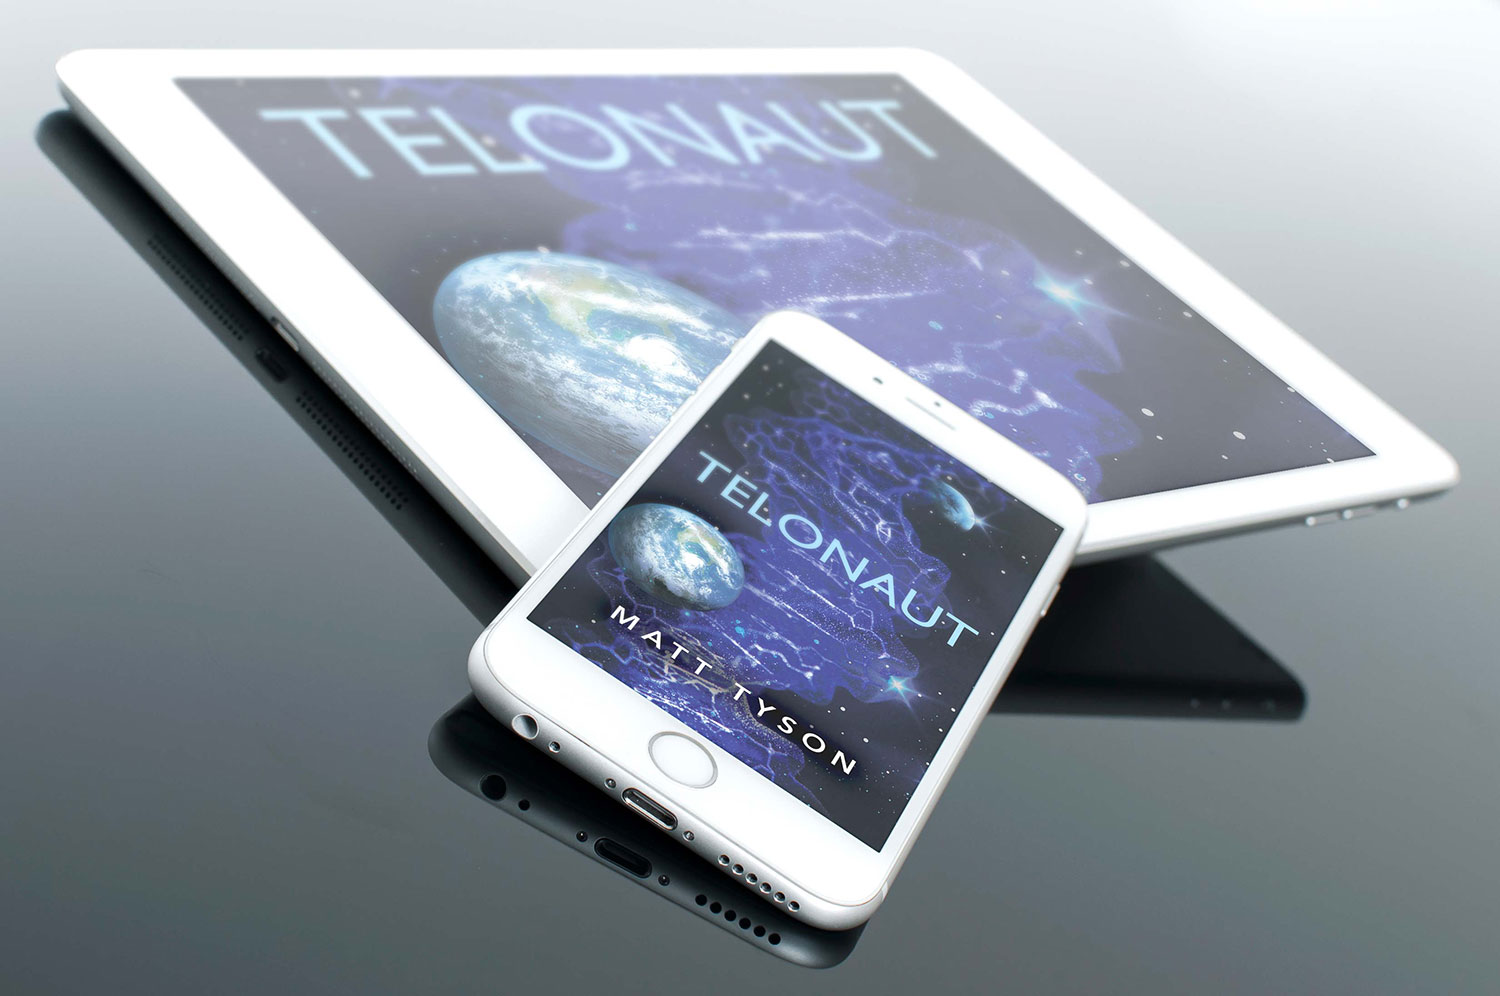 telonaut-matt-tyson-book